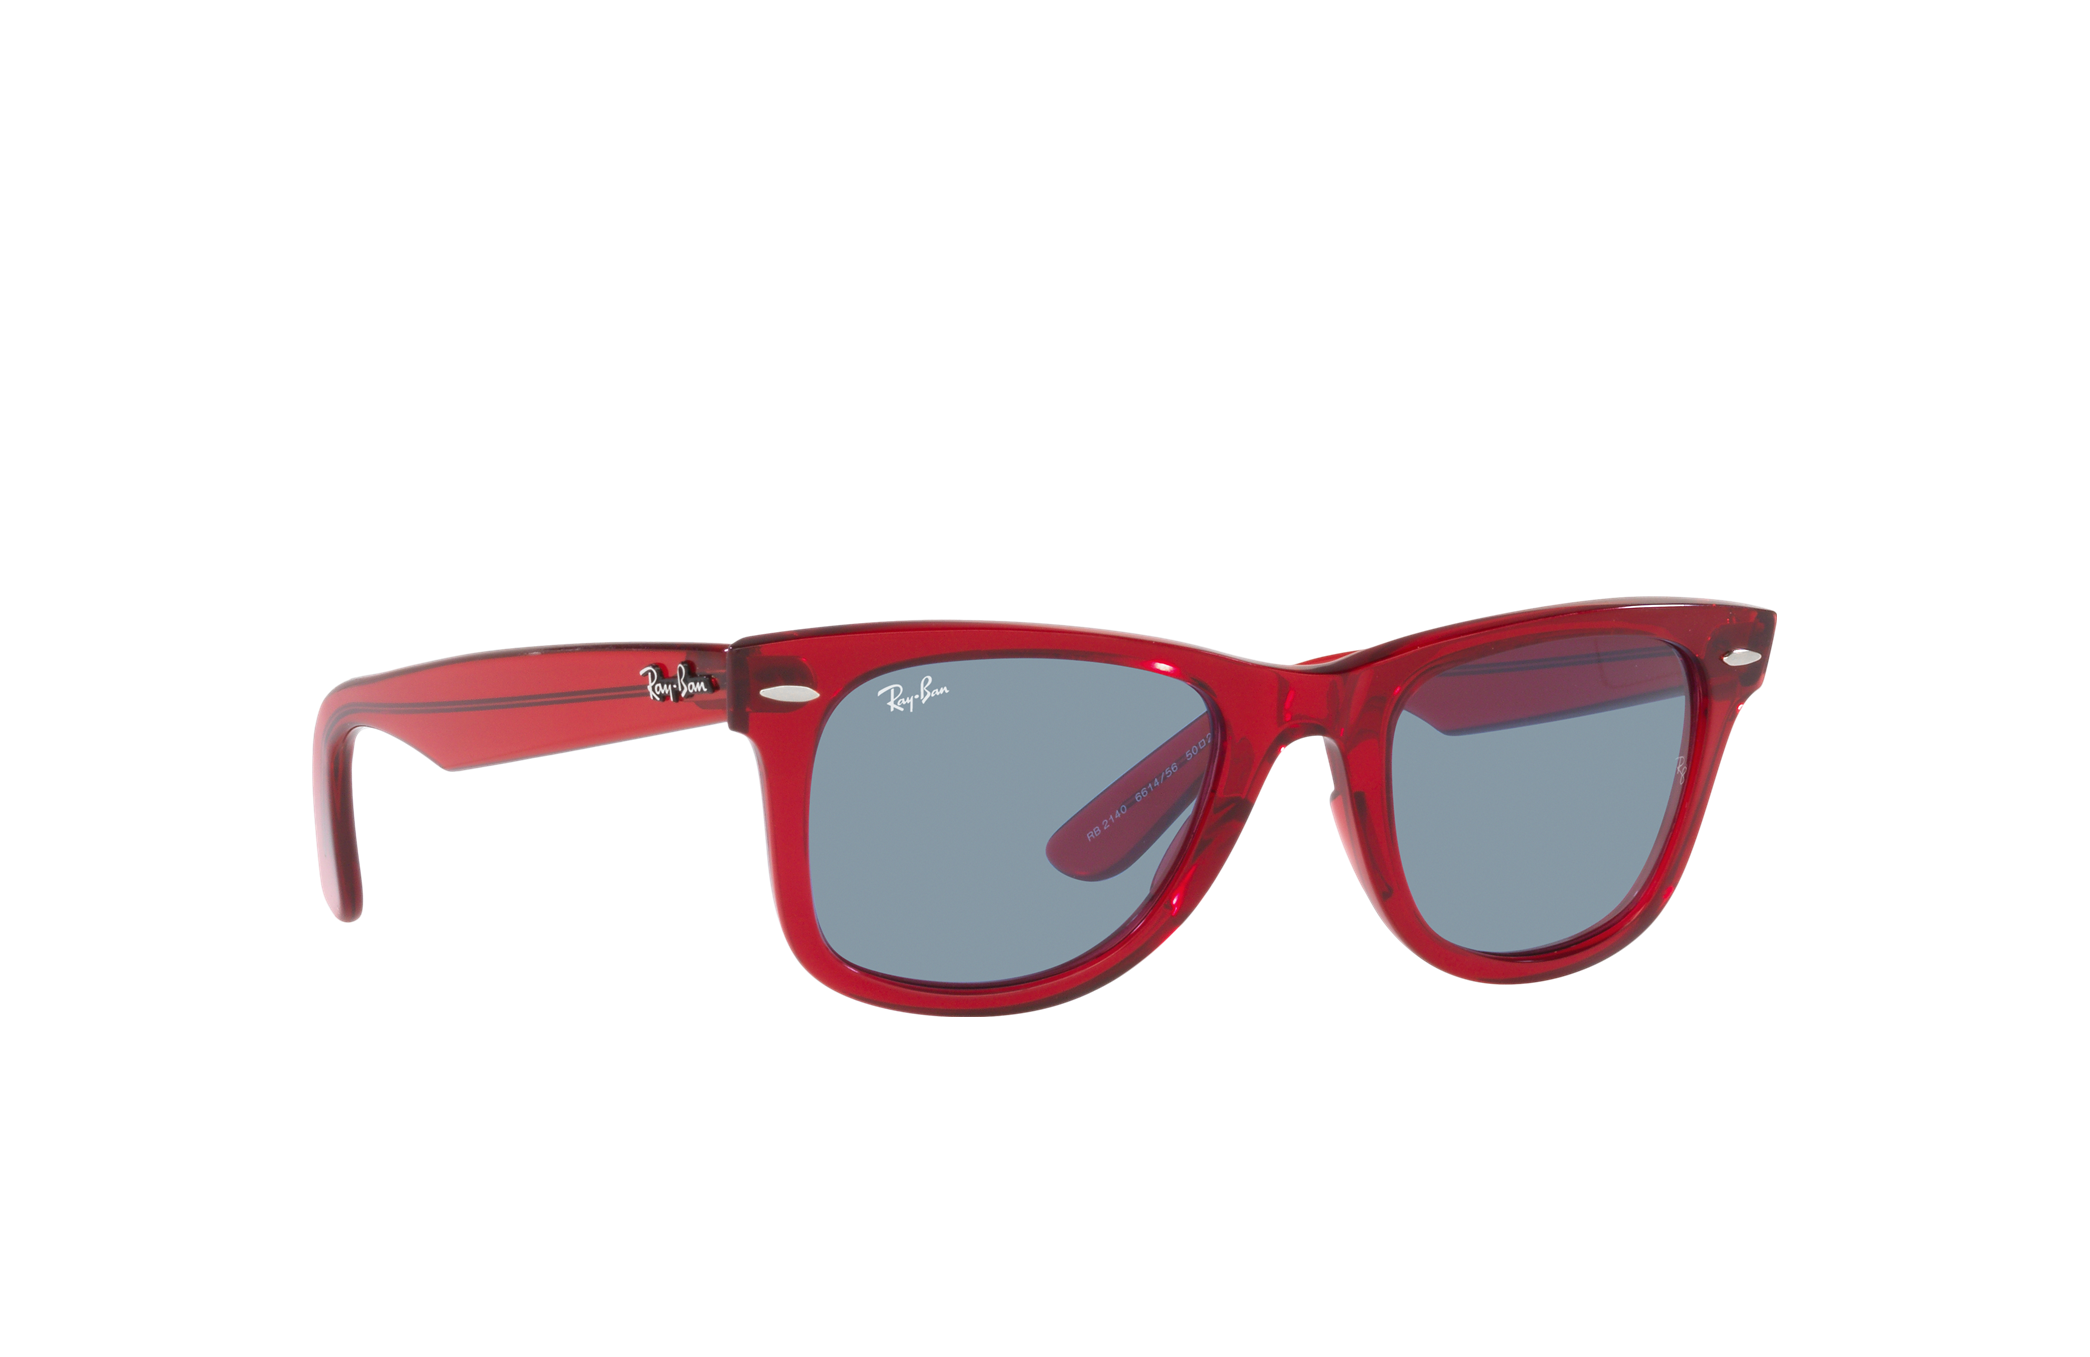 Ray-Ban Justin Men's Matte Black Frame Red Lens Sunglasses RB4165 622/6Q  51-16 8053672416176 | eBay